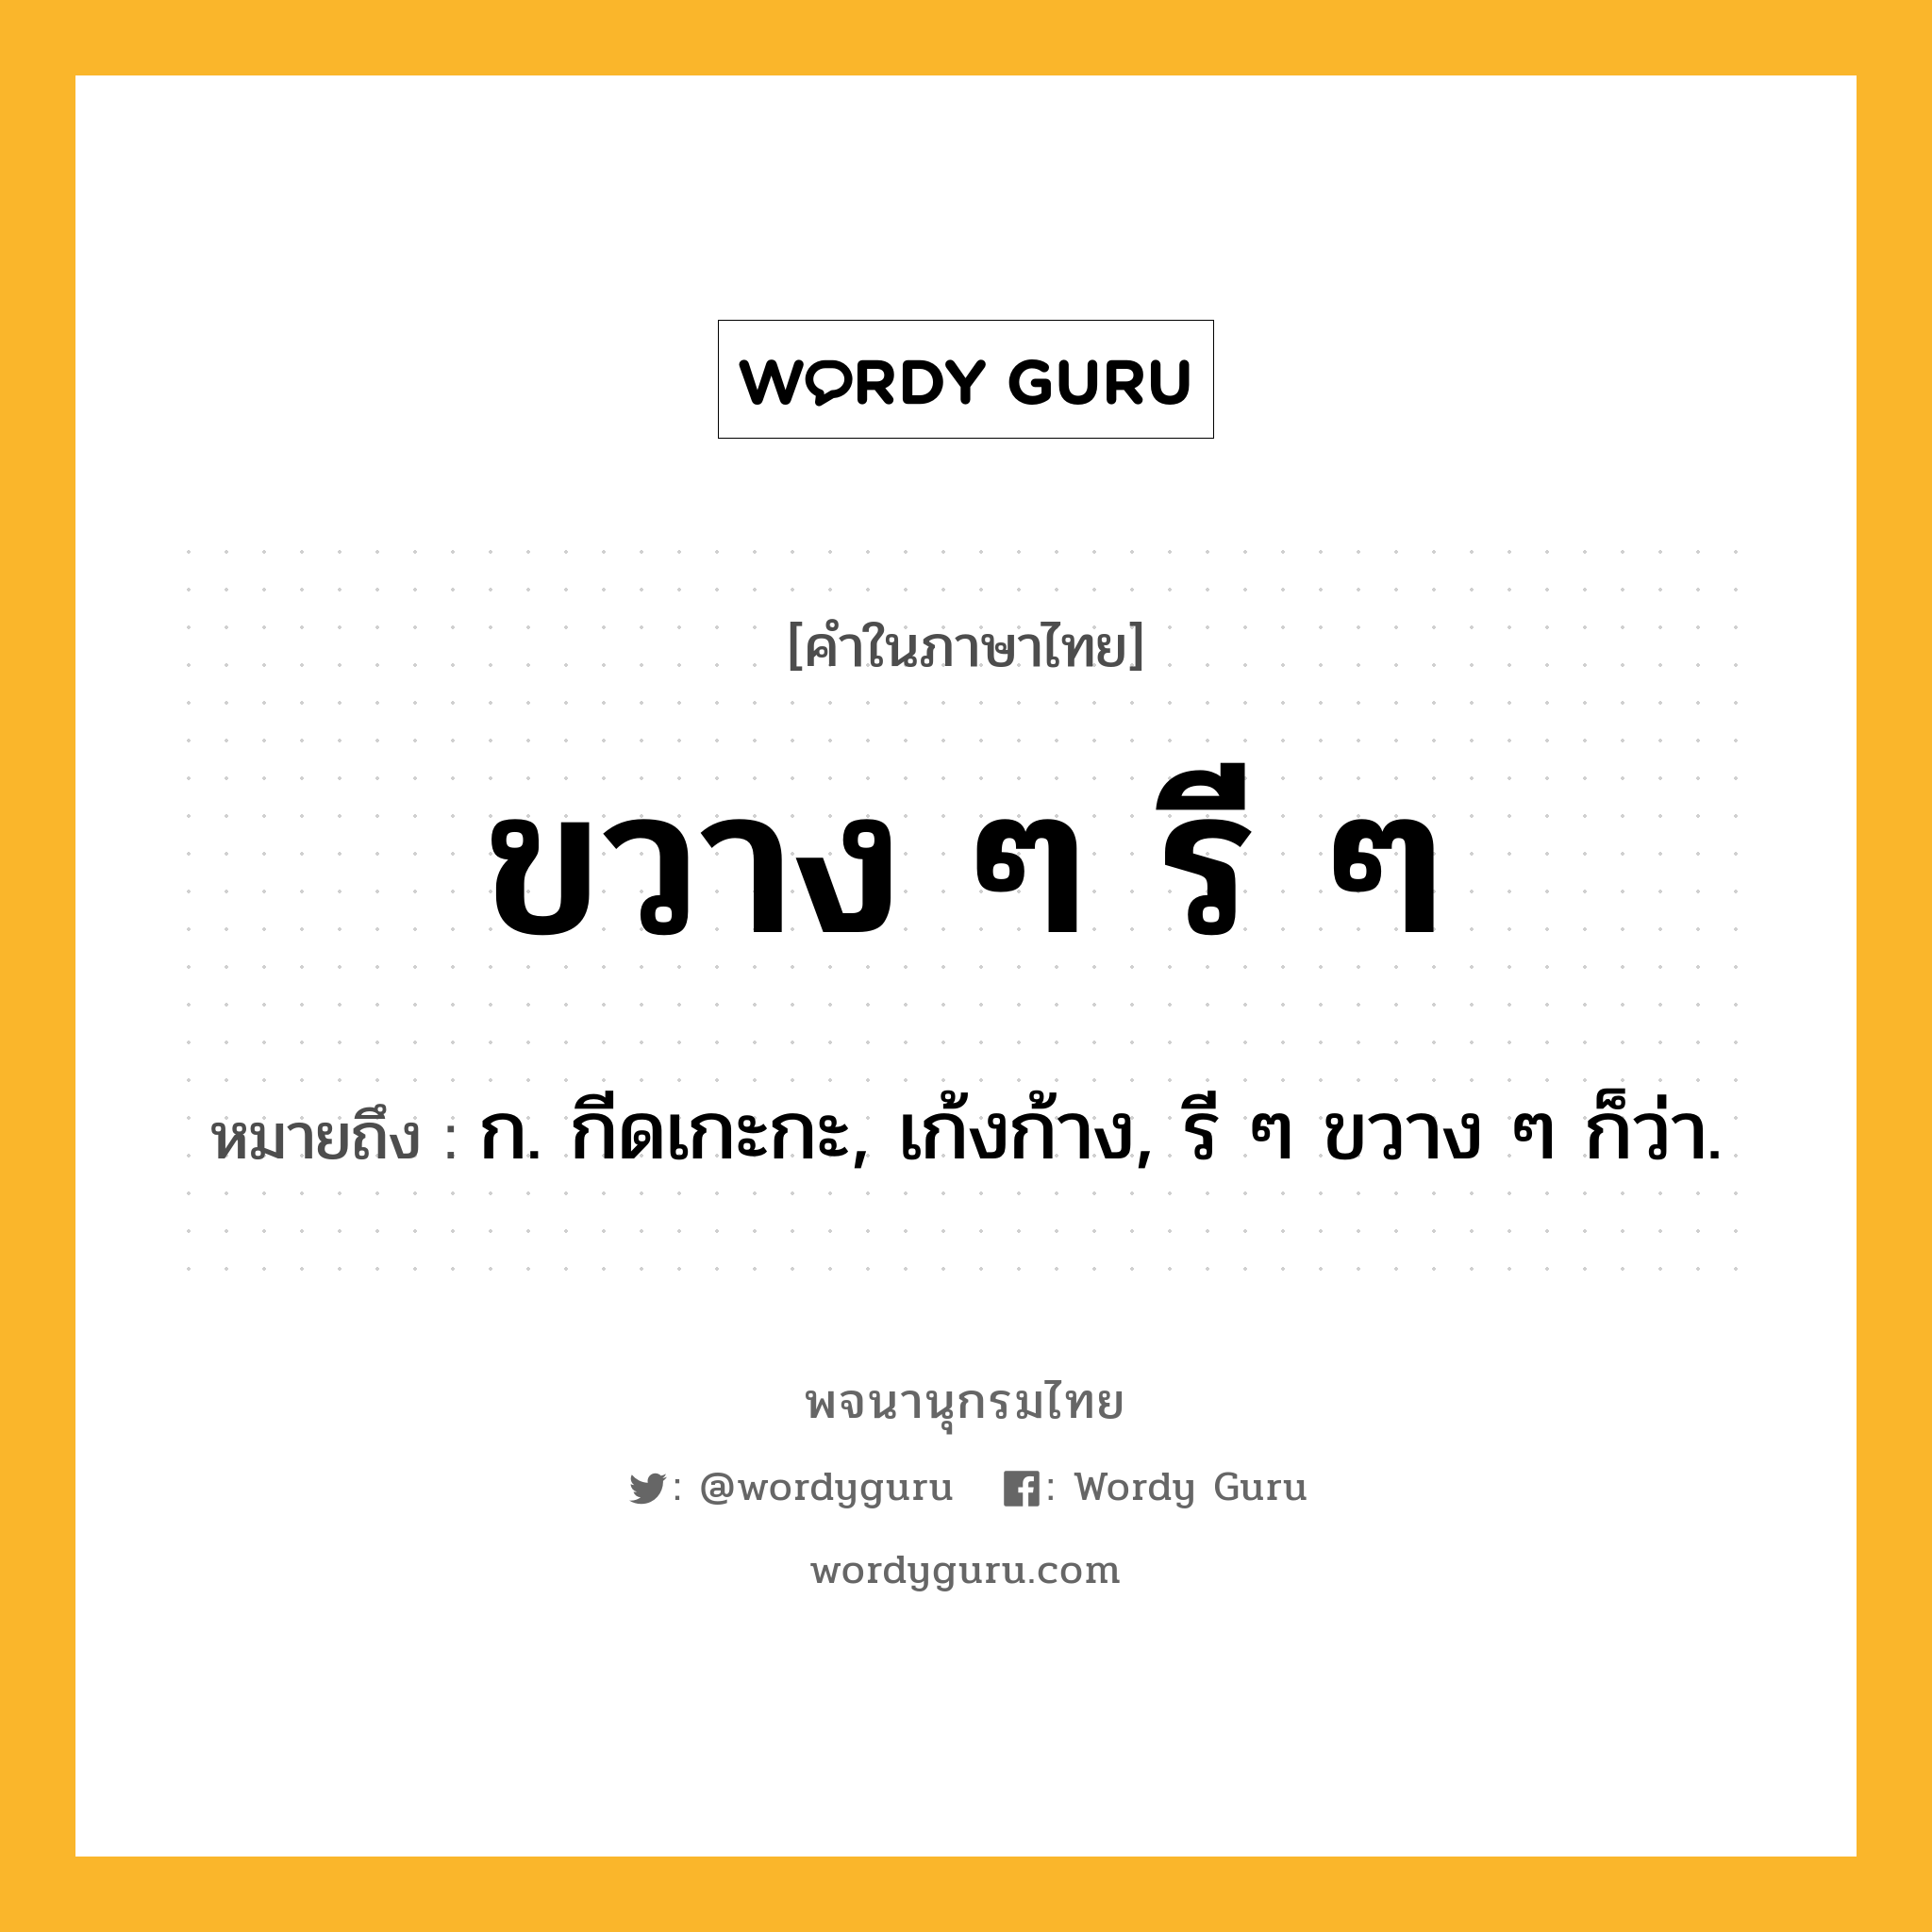 ขวาง ๆ รี ๆ หมายถึงอะไร?, คำในภาษาไทย ขวาง ๆ รี ๆ หมายถึง ก. กีดเกะกะ, เก้งก้าง, รี ๆ ขวาง ๆ ก็ว่า.